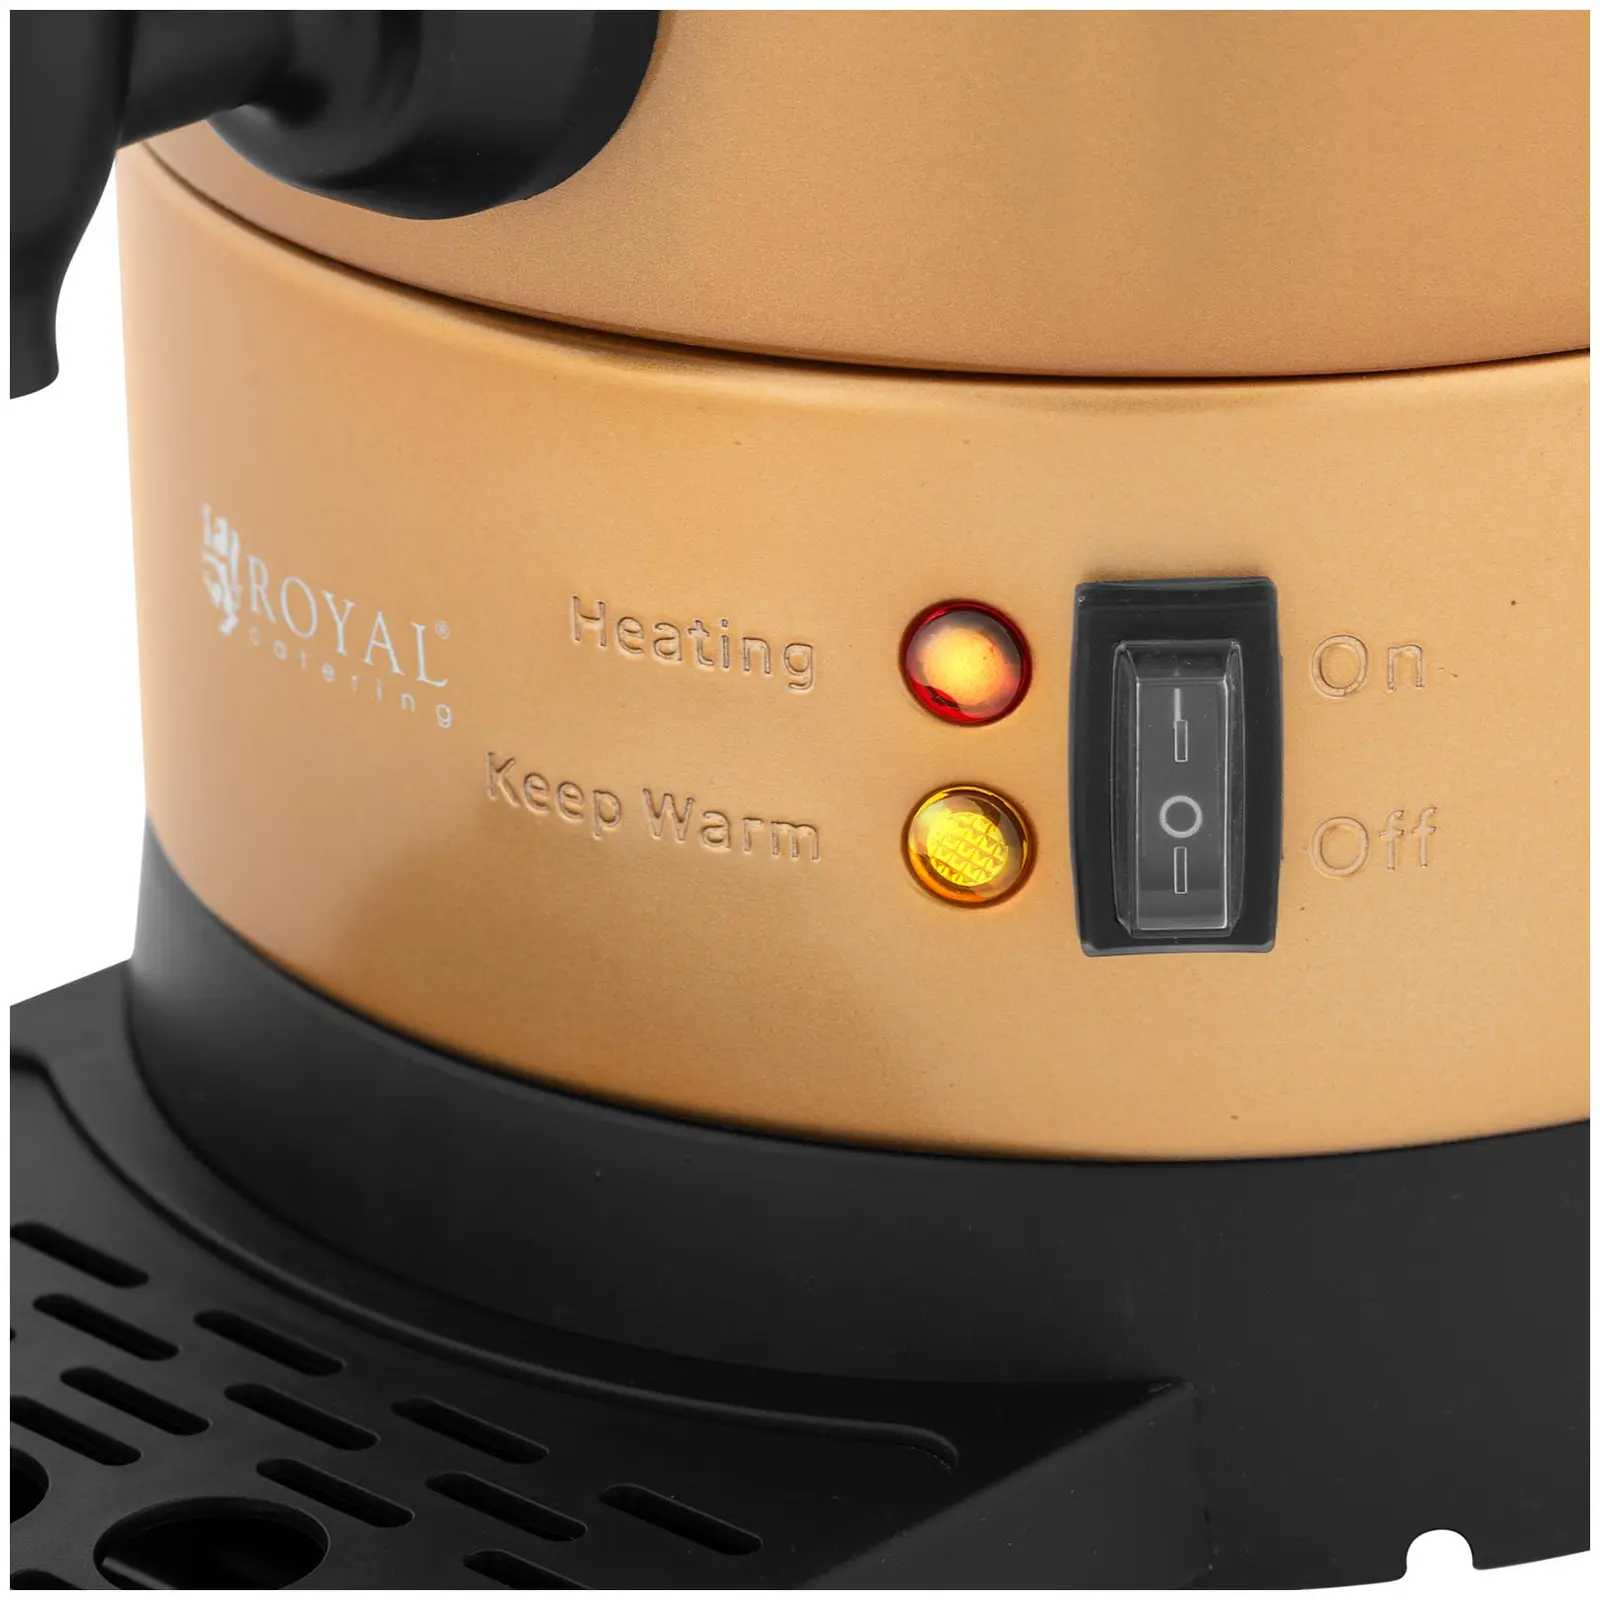 Kaffemaskine - 6 l - guldfarvet - Royal Catering